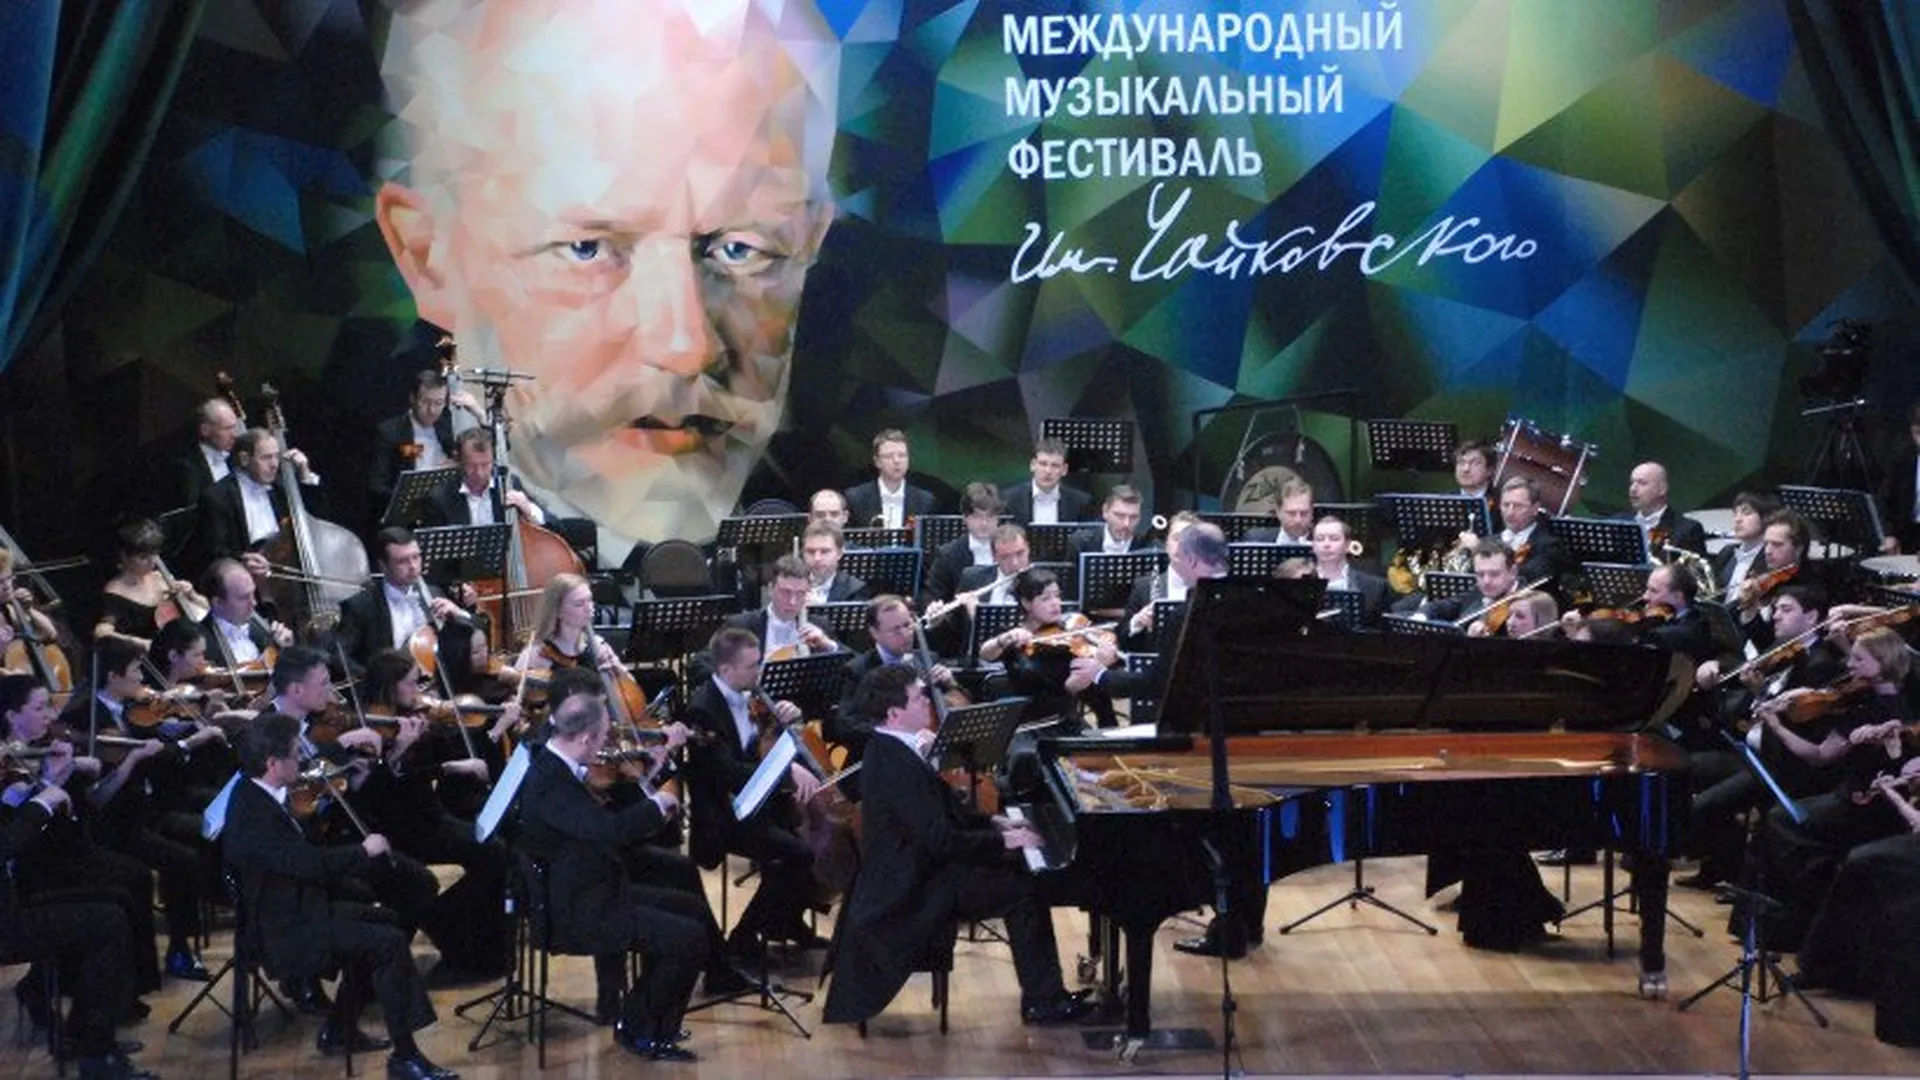 Клин готовится к фестивалю Чайковского: гостей удивят зеркальной сценой